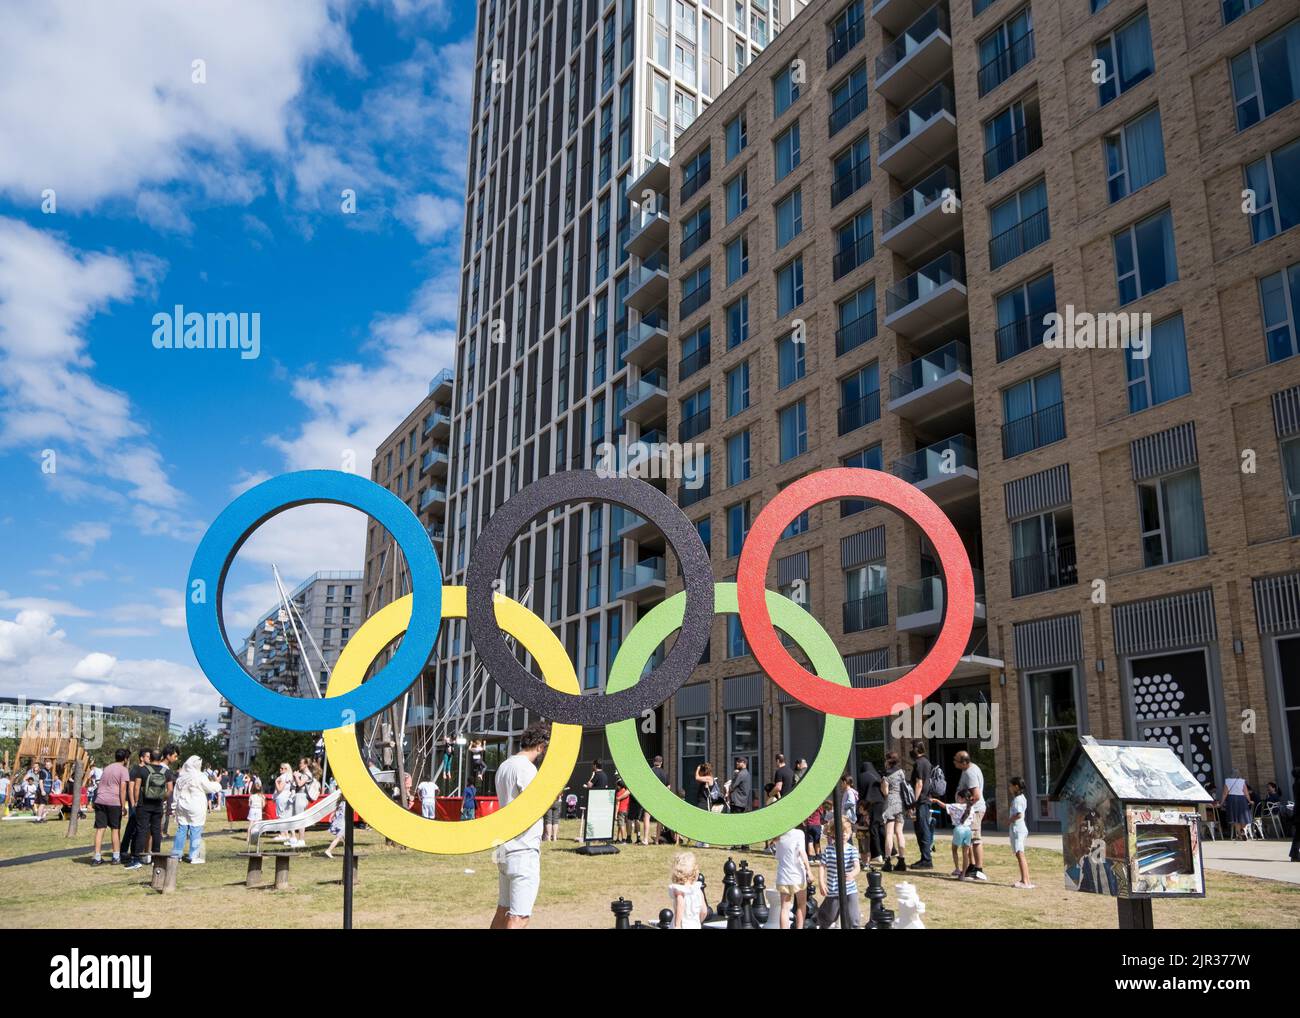 Anneaux olympiques, E20 Summer Fete, célébrant le 10 ans des Jeux Olympiques de Londres 2012 où East Village a accueilli 17 000 athlètes. Banque D'Images